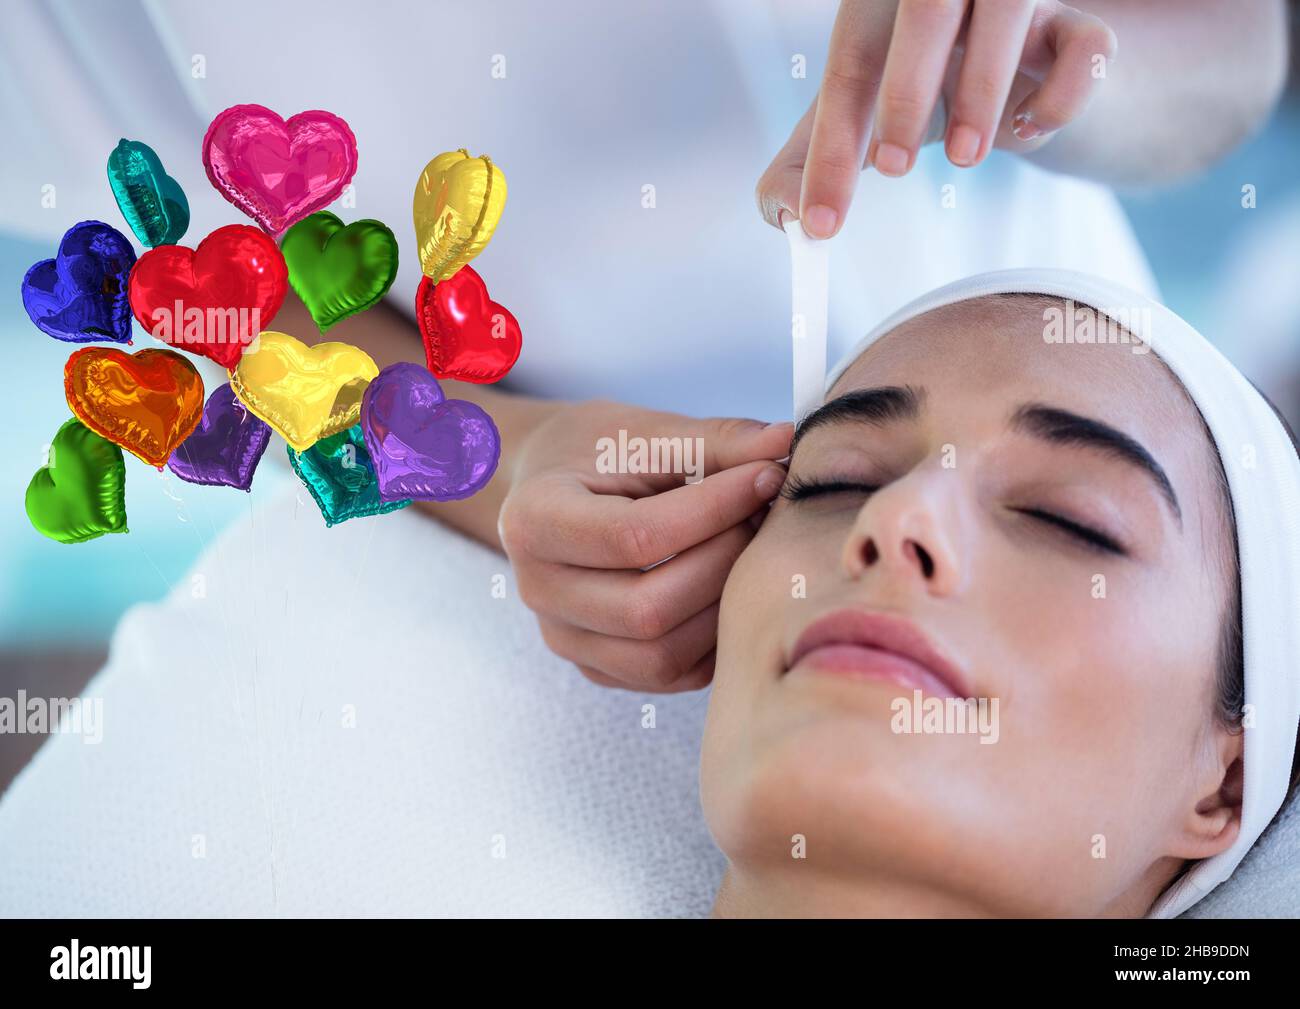 Immagine composita di palloncini colorati a forma di cuore contro la donna che riceve il trattamento viso di bellezza Foto Stock